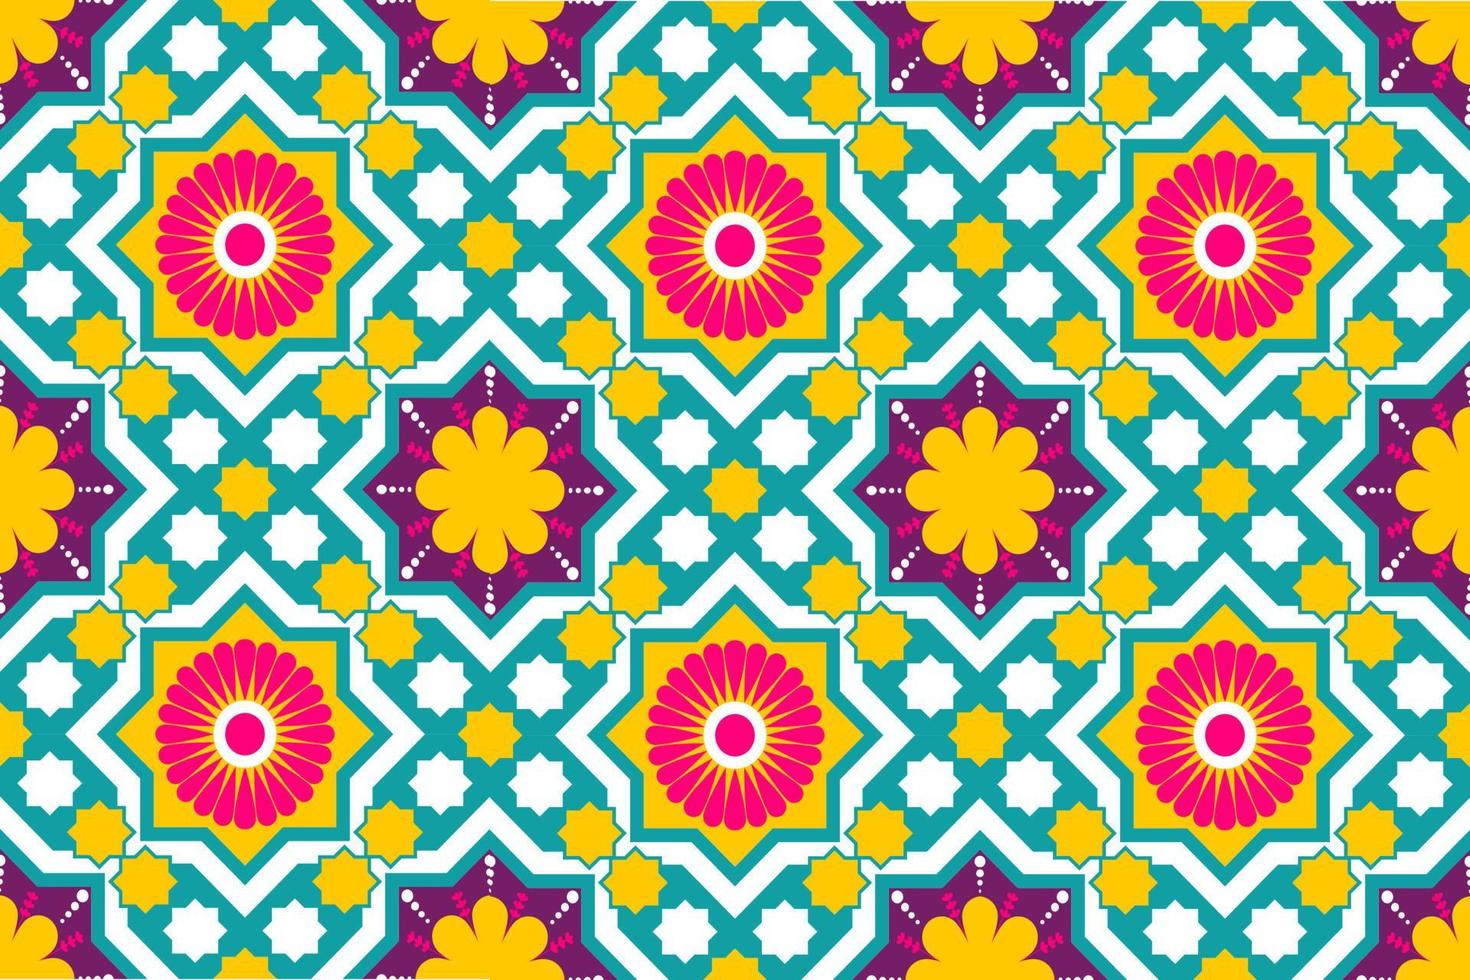 Marrocos colorido e padrão sem emenda de motivo étnico indiano com design de fundo tradicional de natureza para tapete, papel de parede, roupas, embrulho, batik, tecido, estilo de bordado de ilustração vetorial. vetor